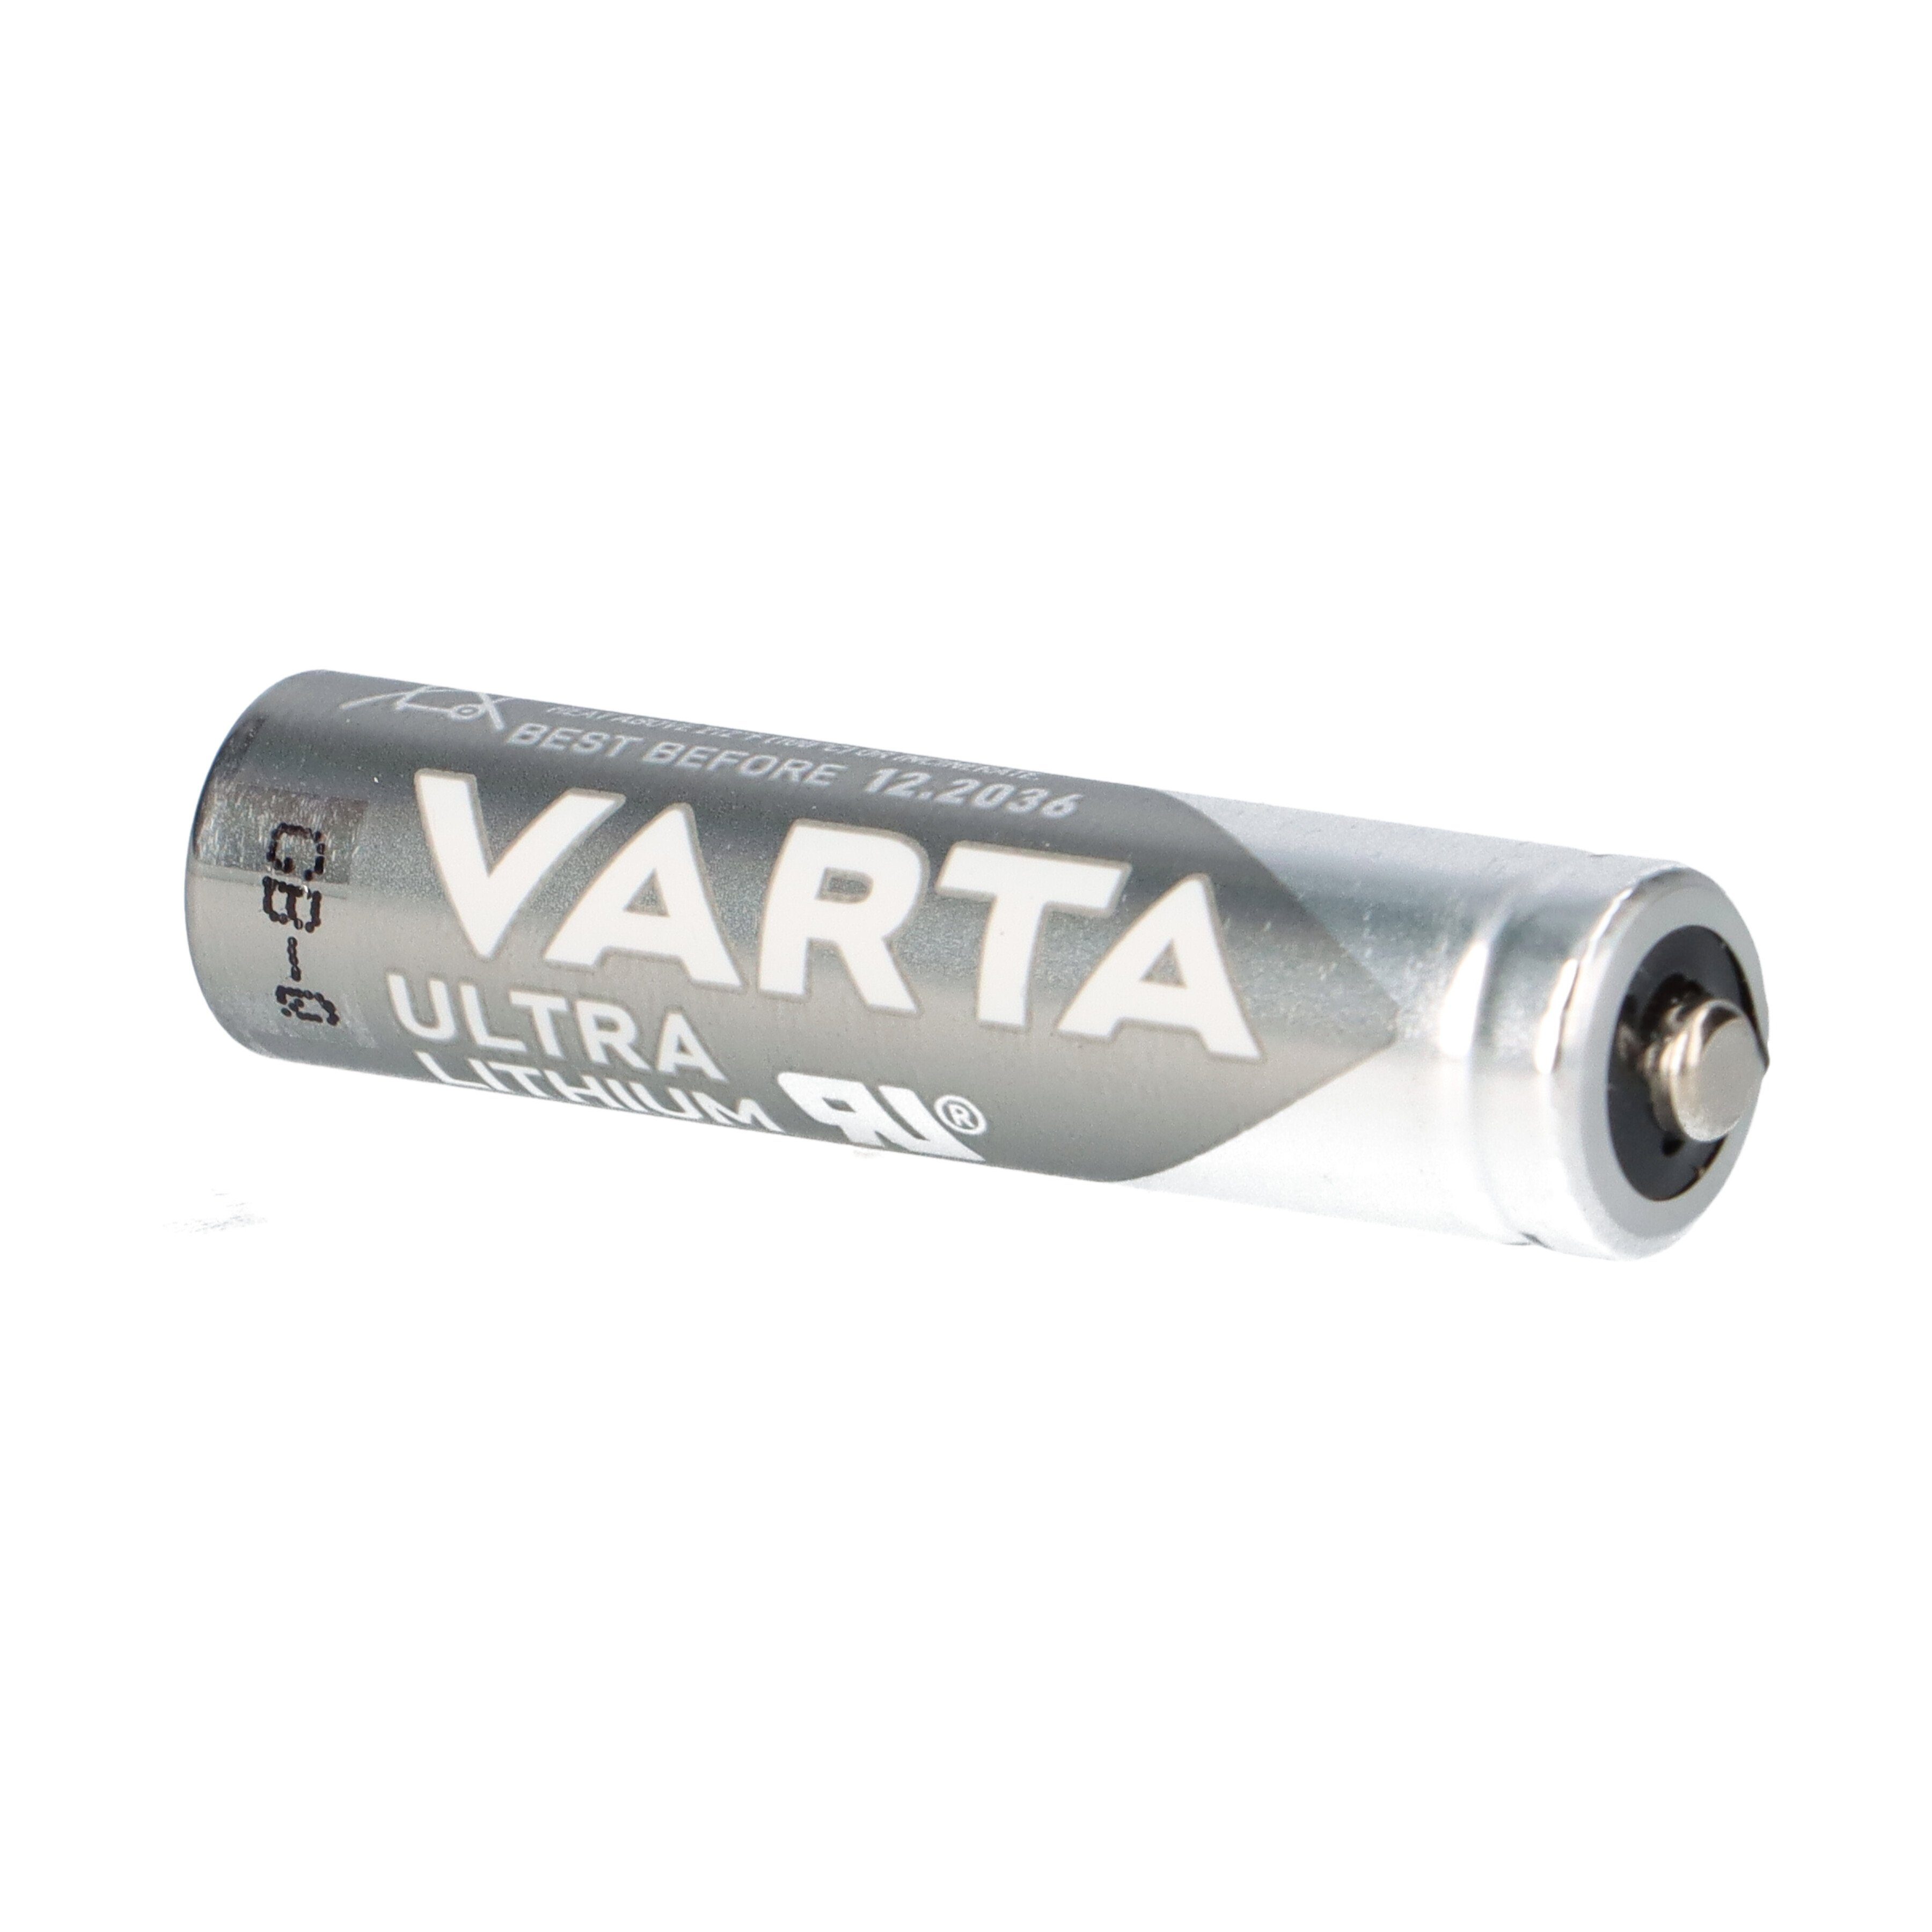 VARTA 5x Varta Professional Lithium 2er Blister Batterie Batterie AAA Micro